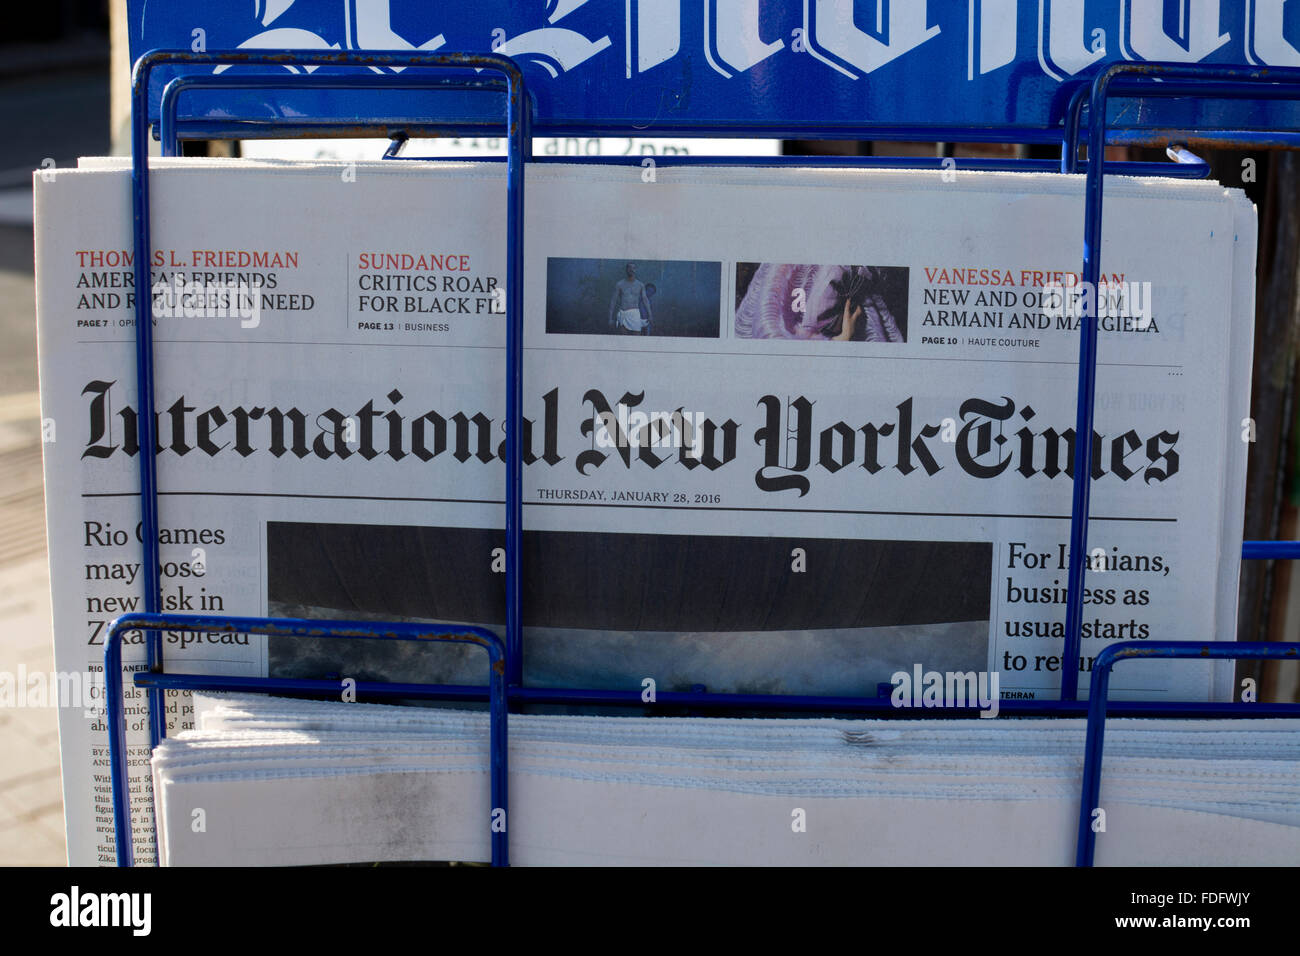 International New York Times sur la vente au Royaume-Uni Banque D'Images